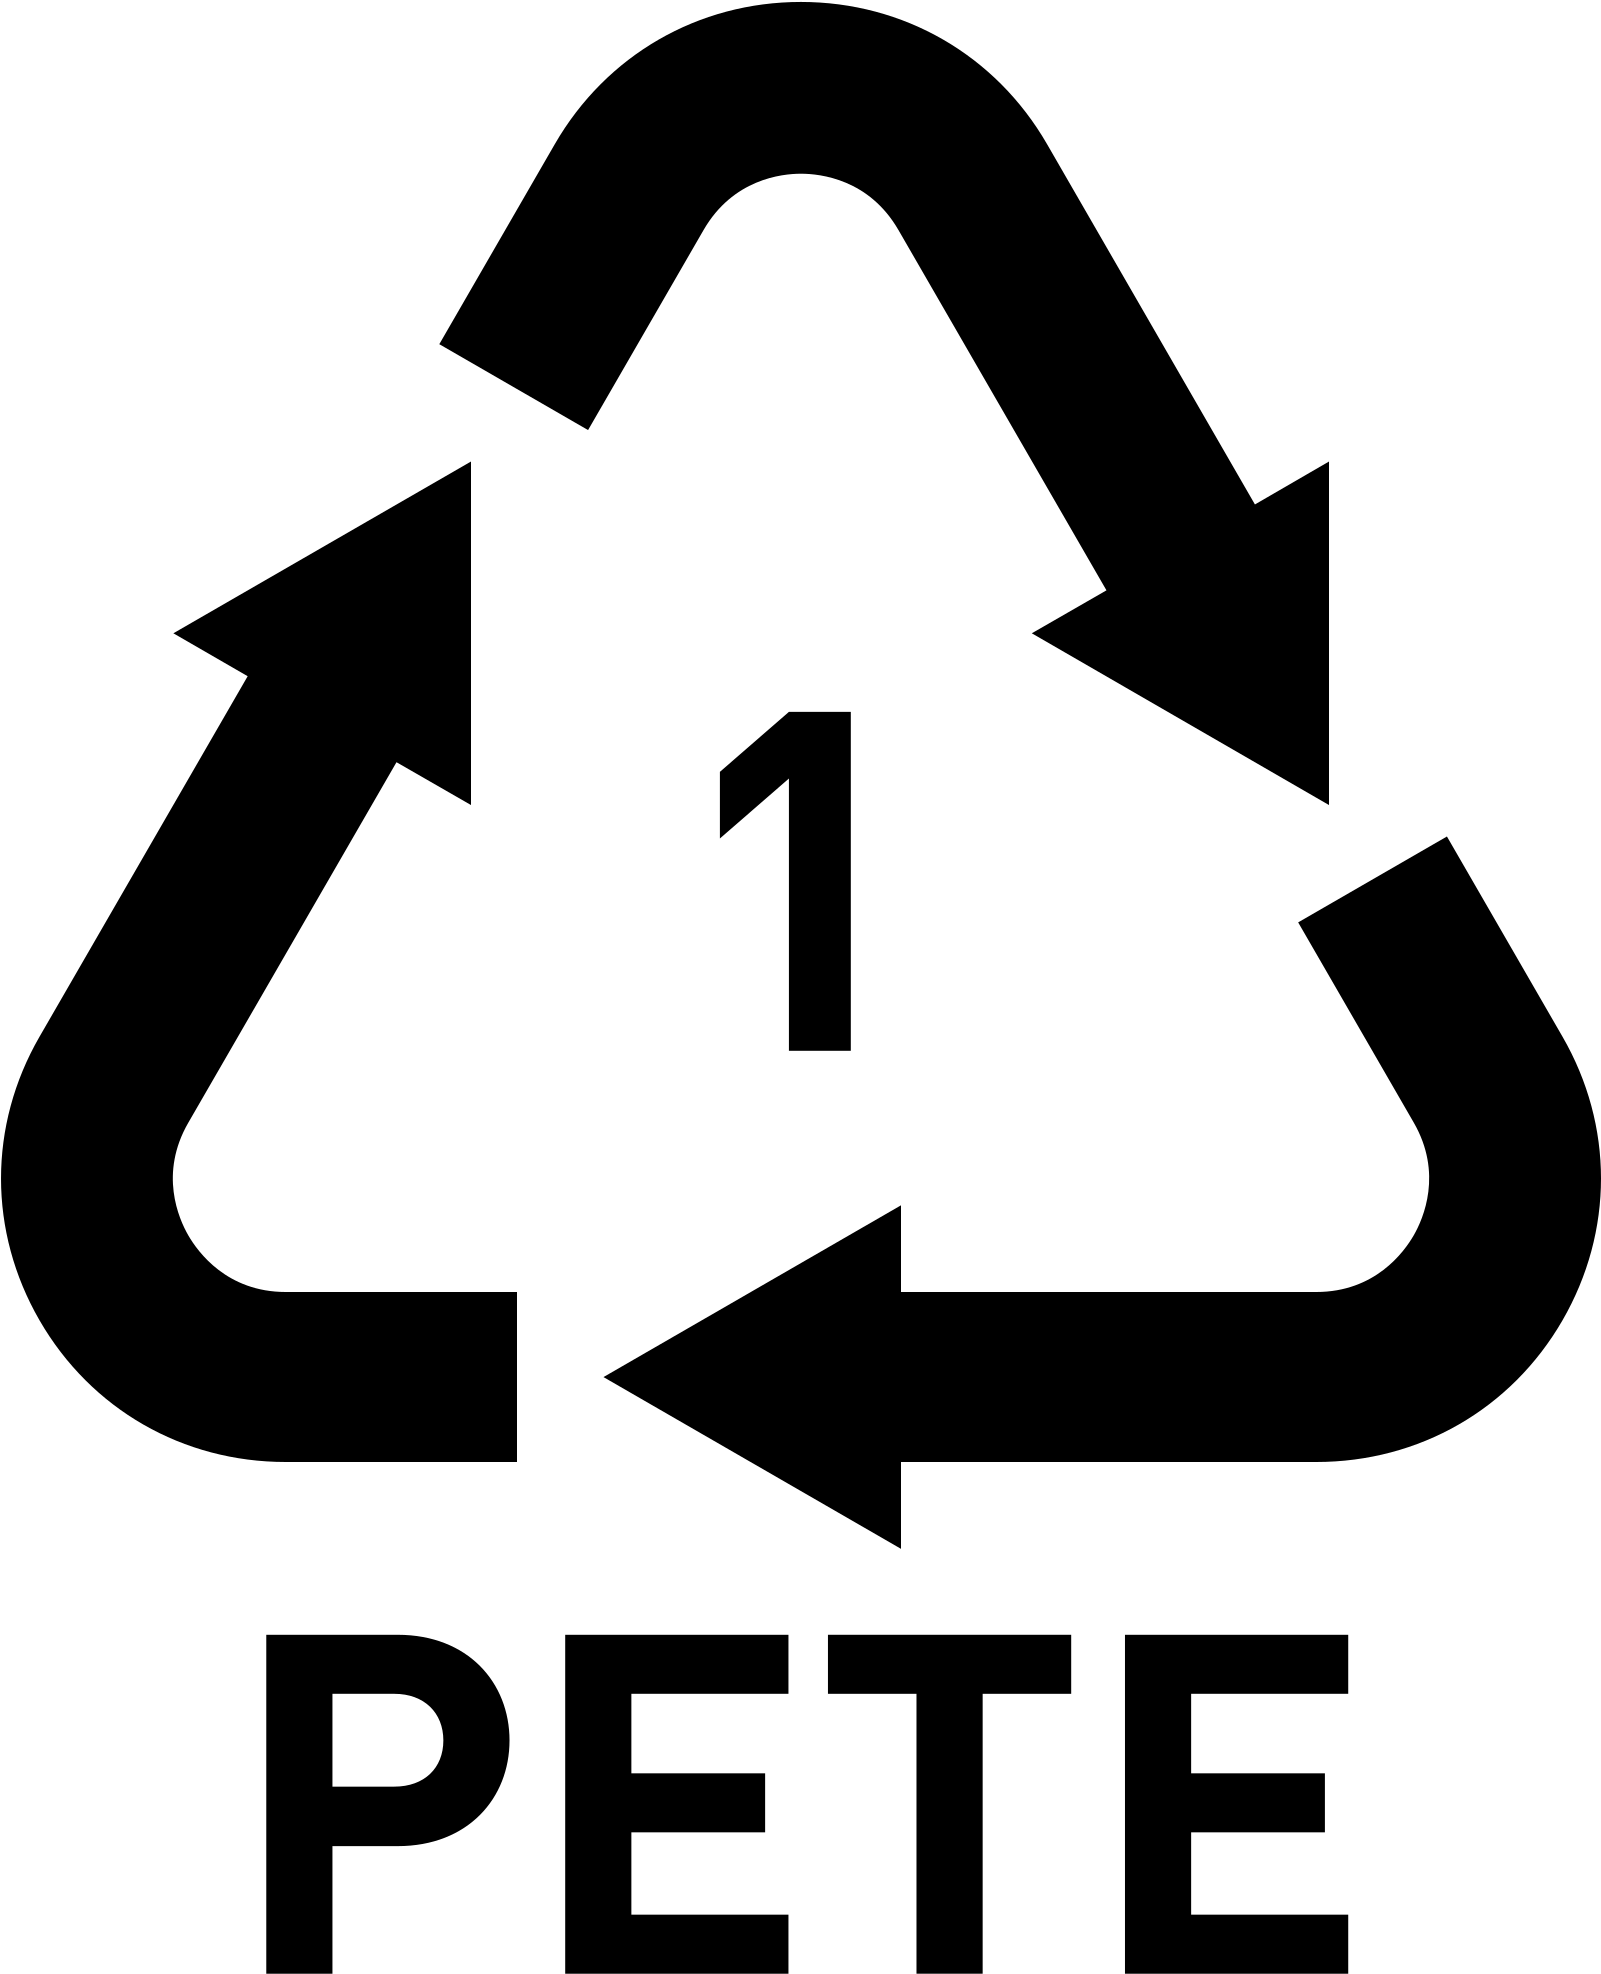 Paper - 5 Pp Symbol (2000x2412)